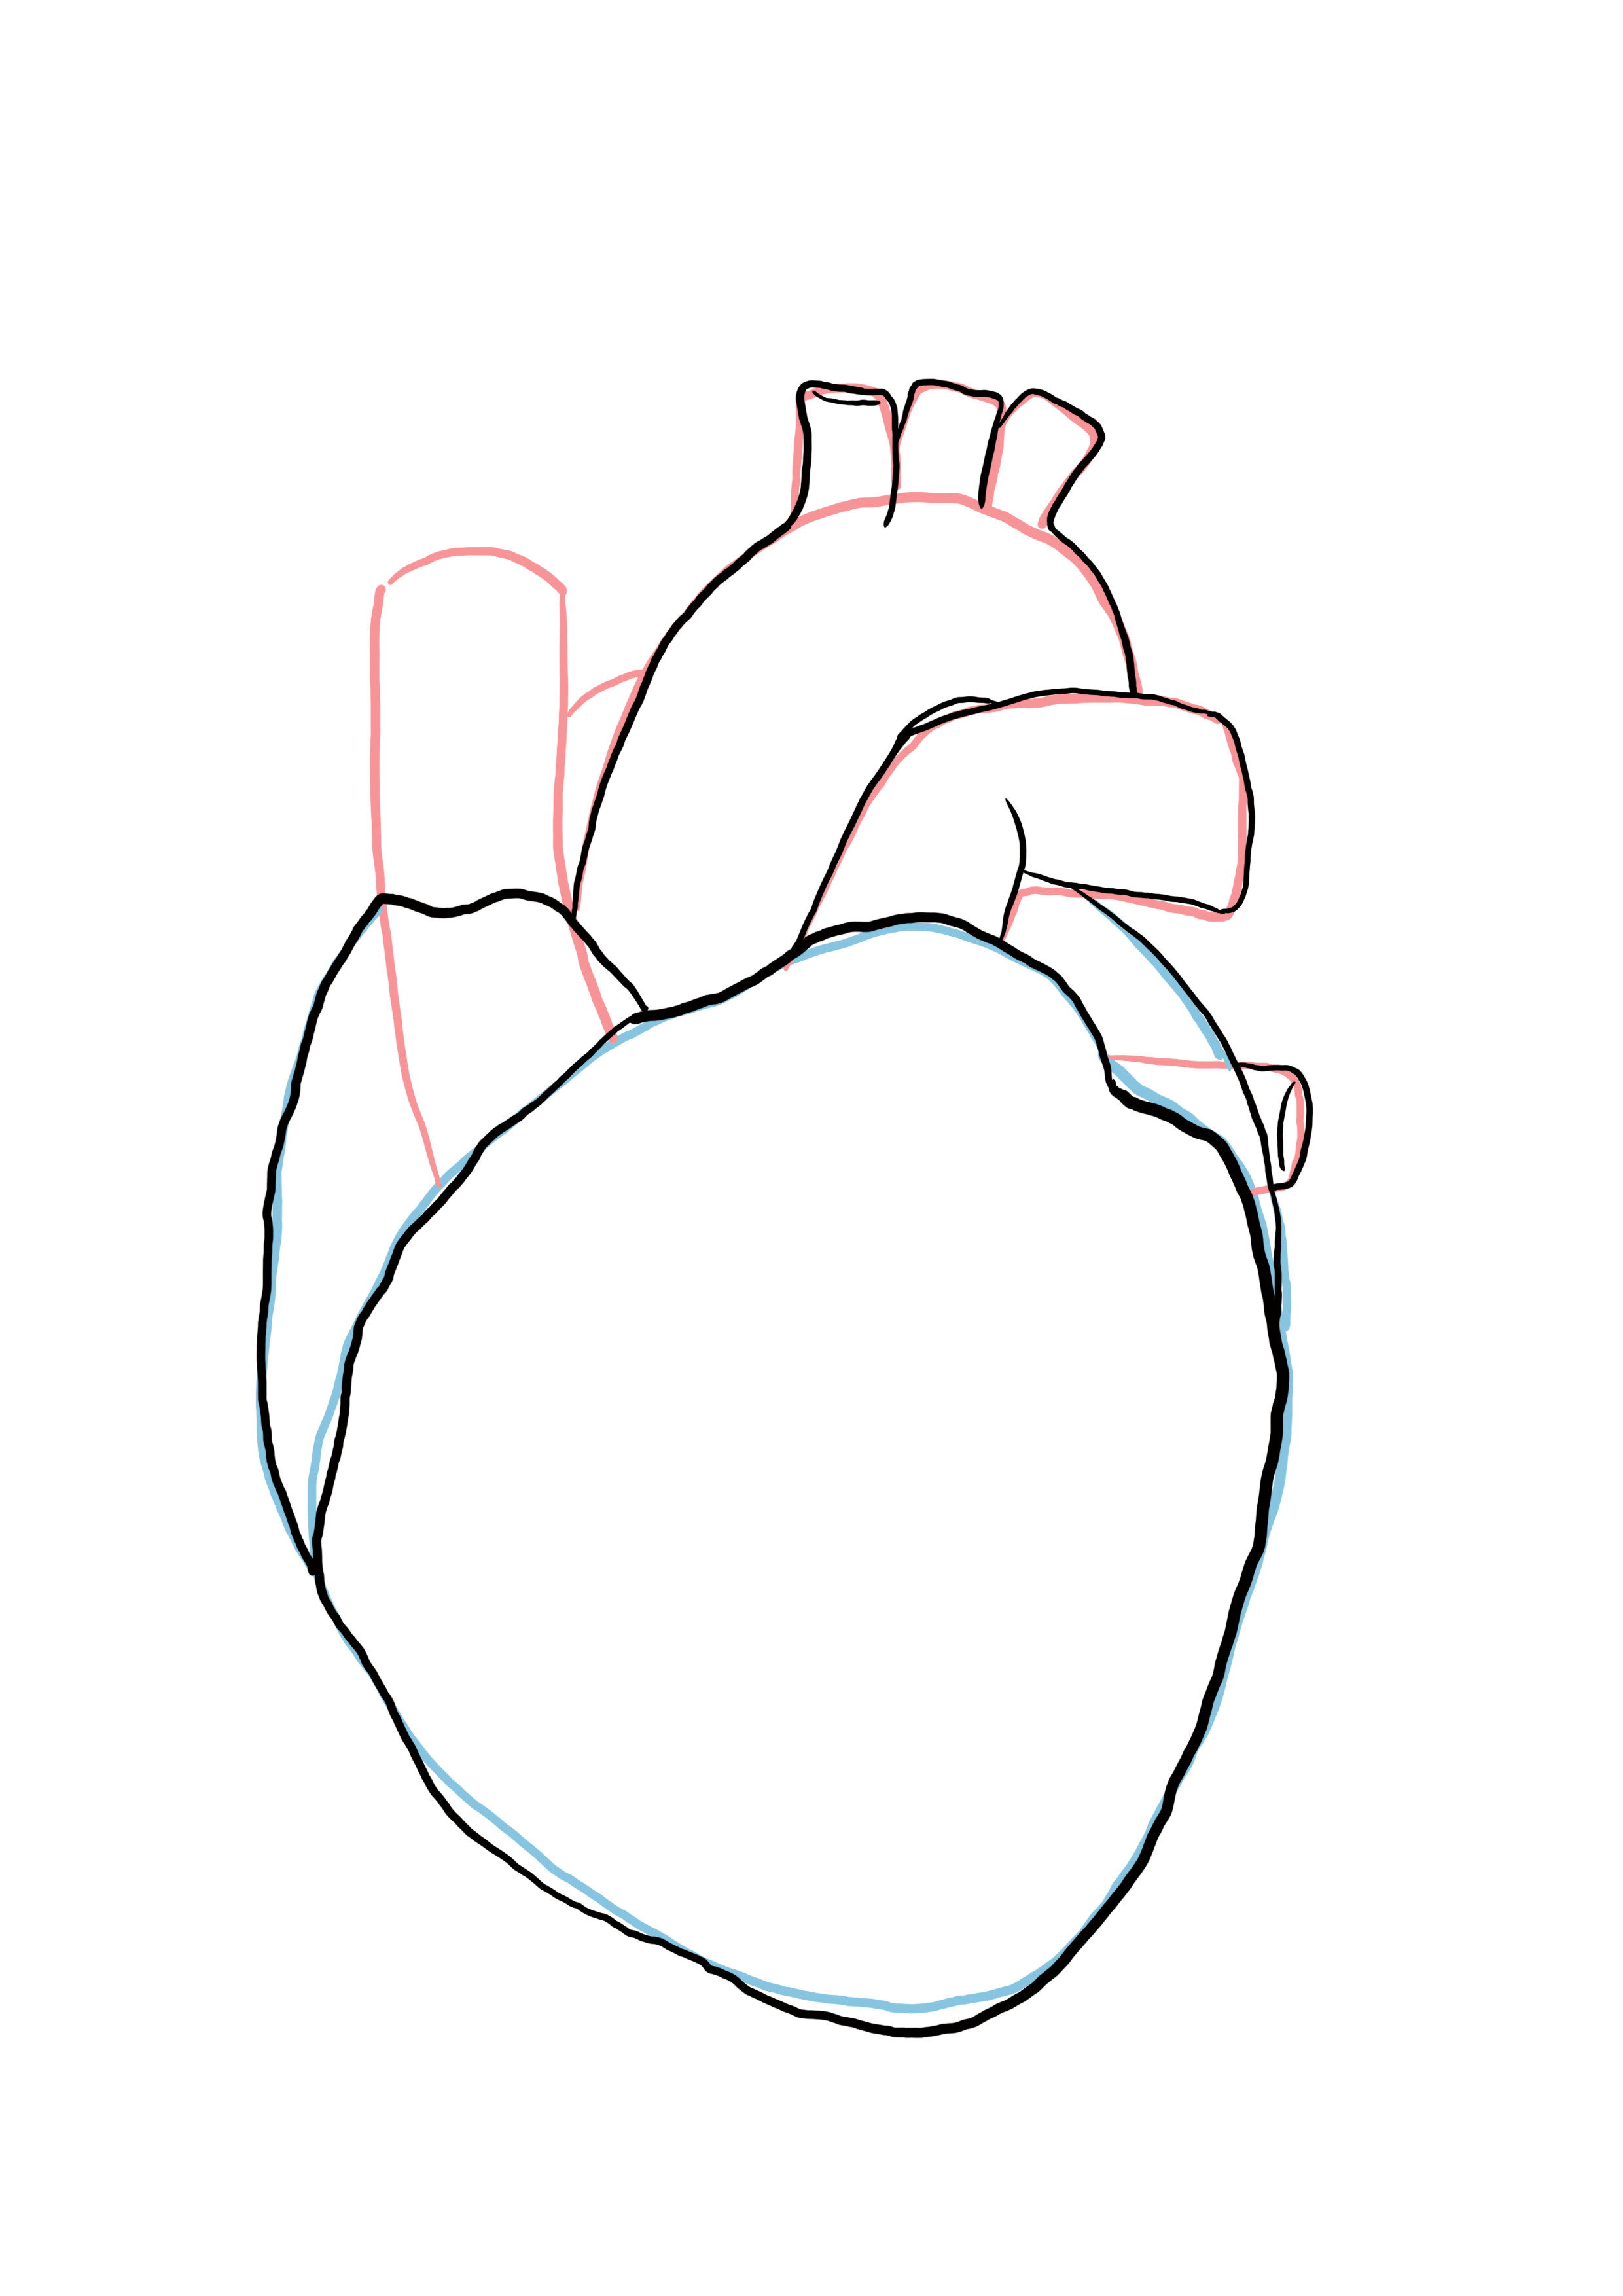 détailler le dessin du coeur anatomique 3